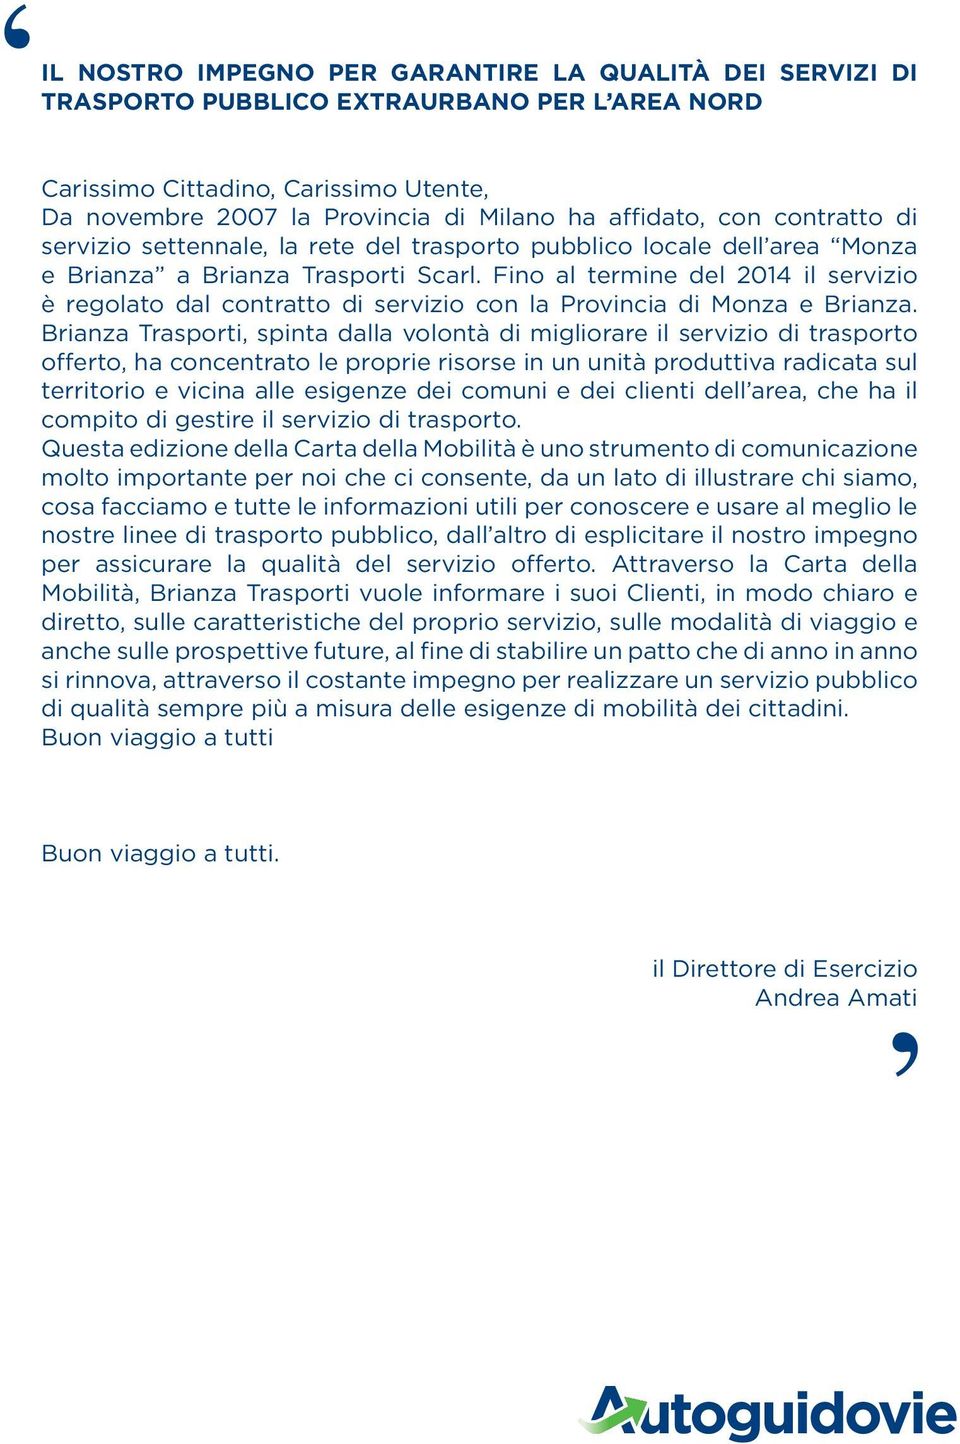 Fino al termine del 2014 il servizio è regolato dal contratto di servizio con la Provincia di Monza e Brianza.